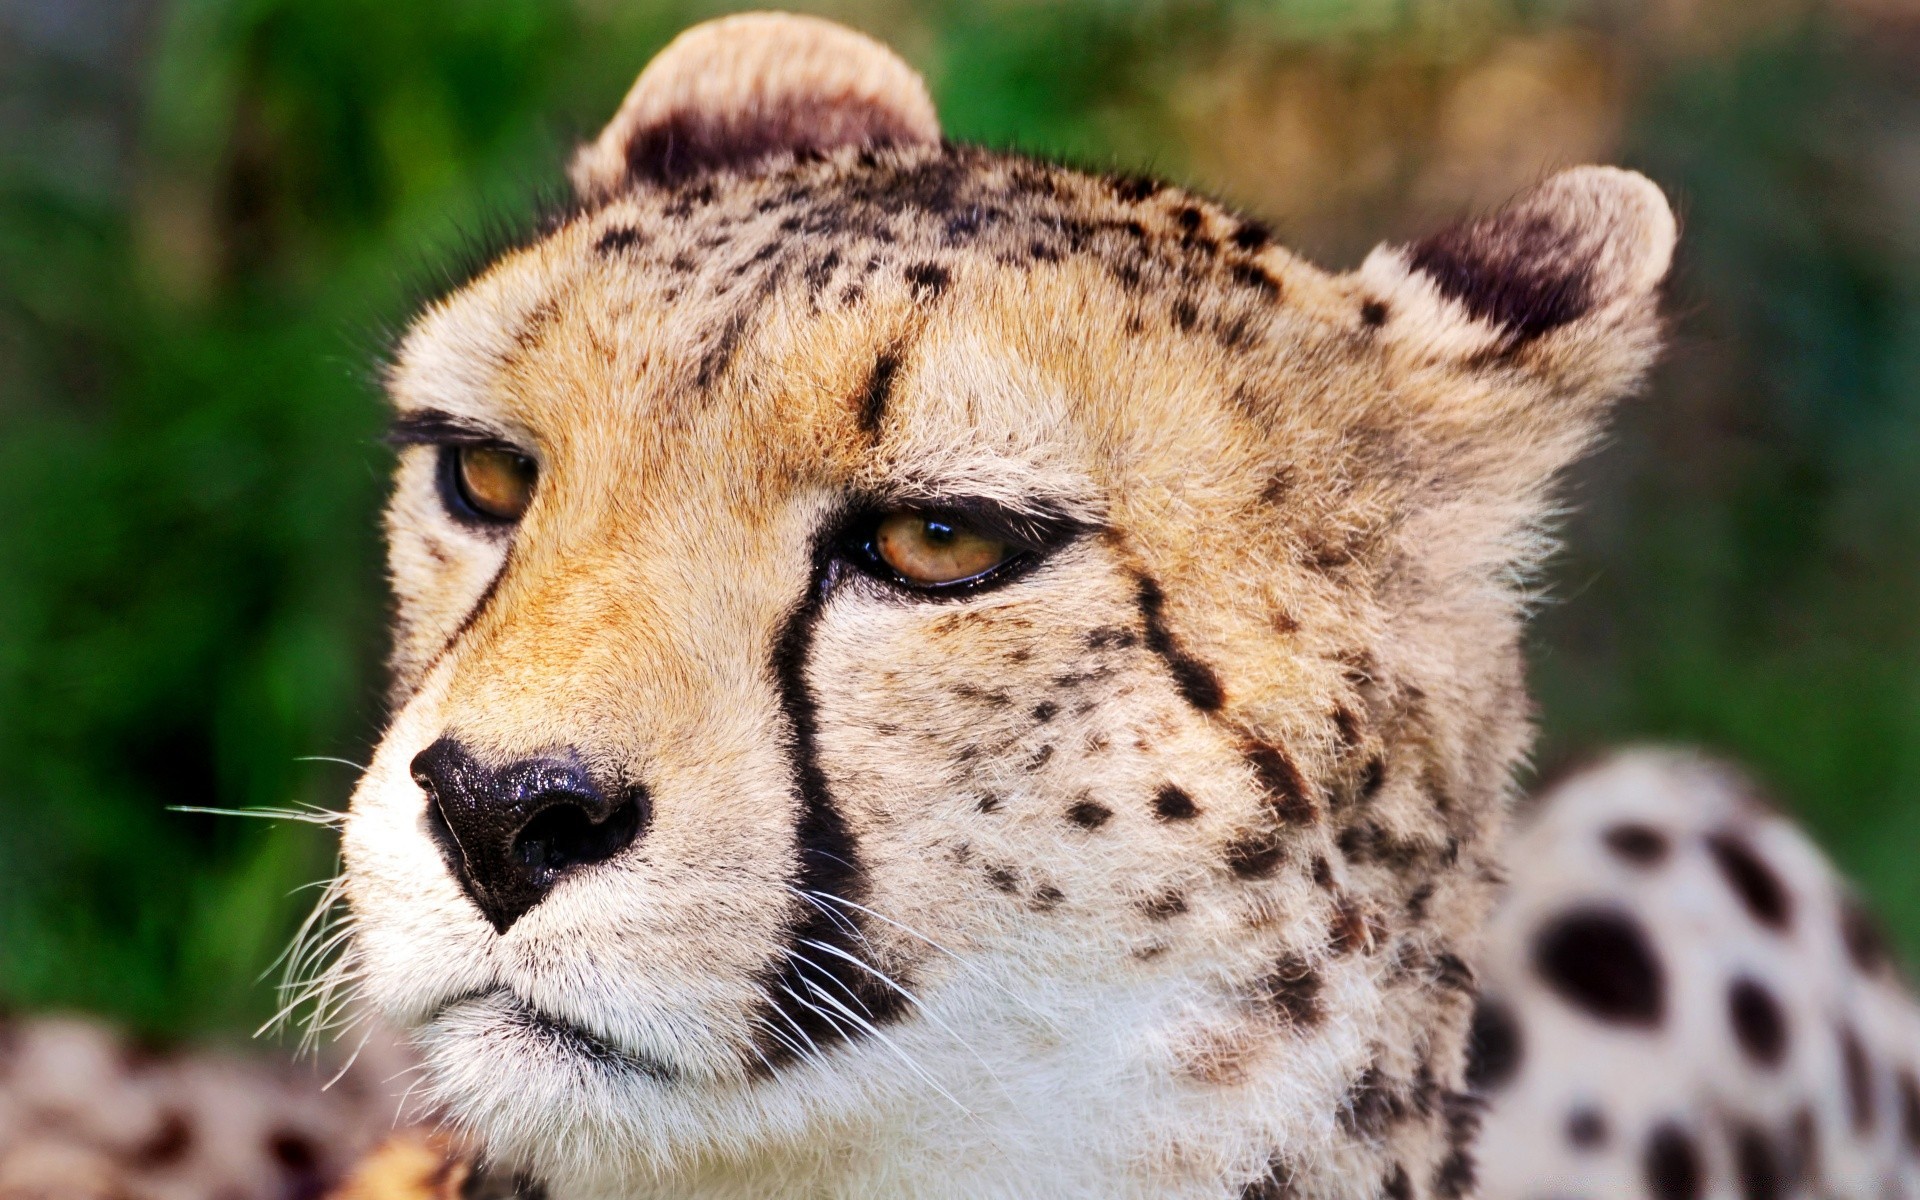 животные дикой природы животное млекопитающее дикий кошка природа хищник мех зоопарк сафари мясоед охотник портрет милые гепард